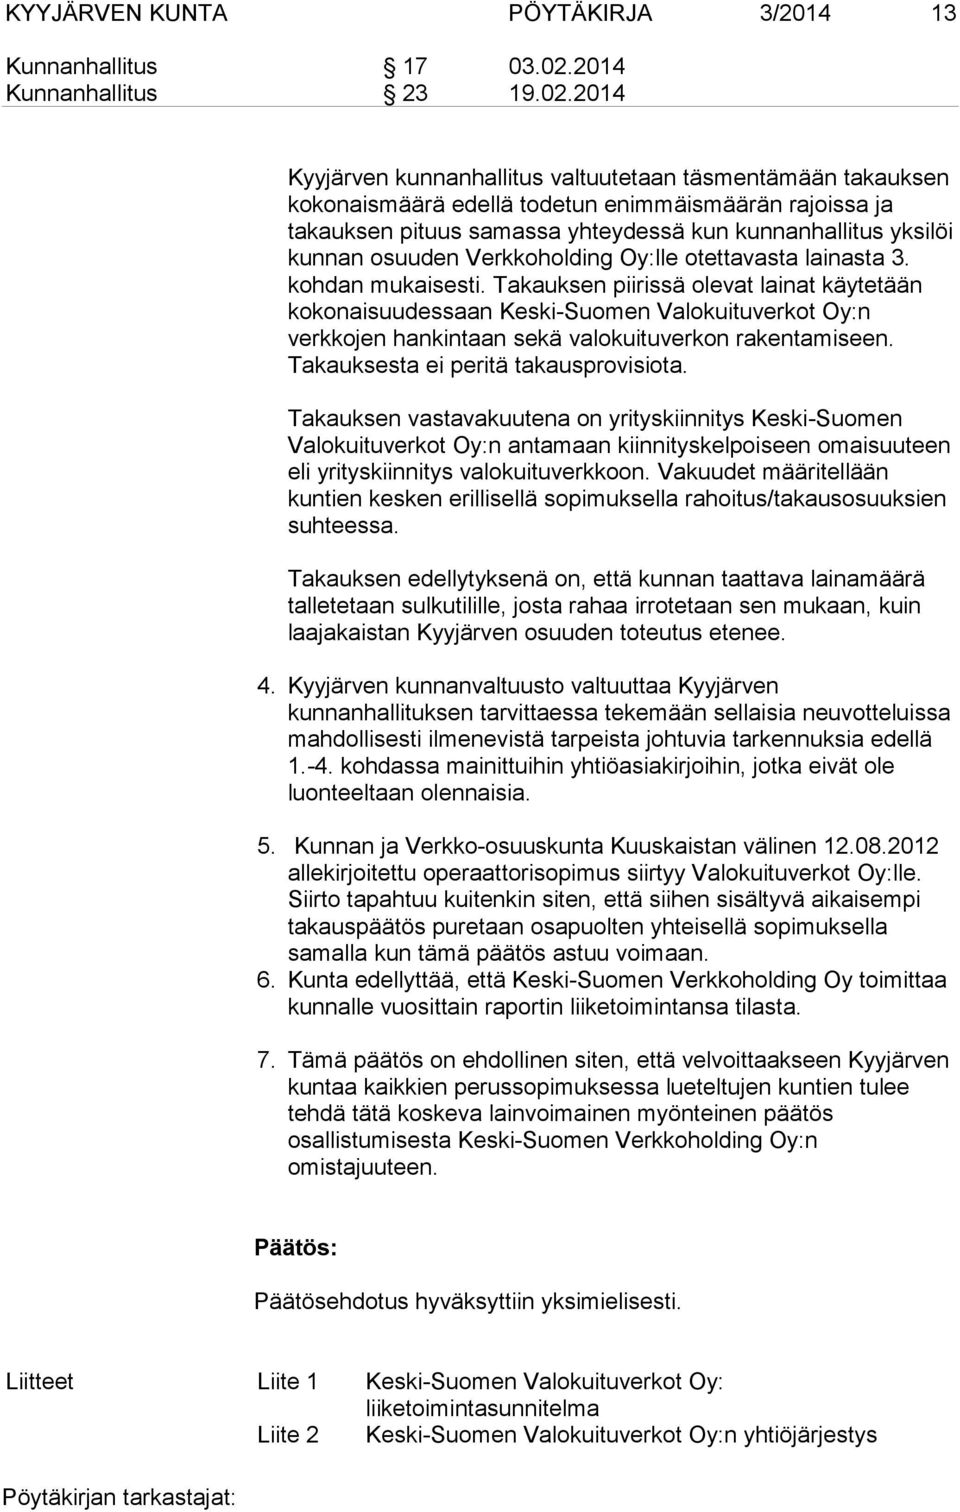 2014 Kyyjärven kunnanhallitus valtuutetaan täsmentämään takauksen kokonaismäärä edellä todetun enimmäismäärän rajoissa ja takauksen pituus samassa yhteydessä kun kunnanhallitus yksilöi kunnan osuuden